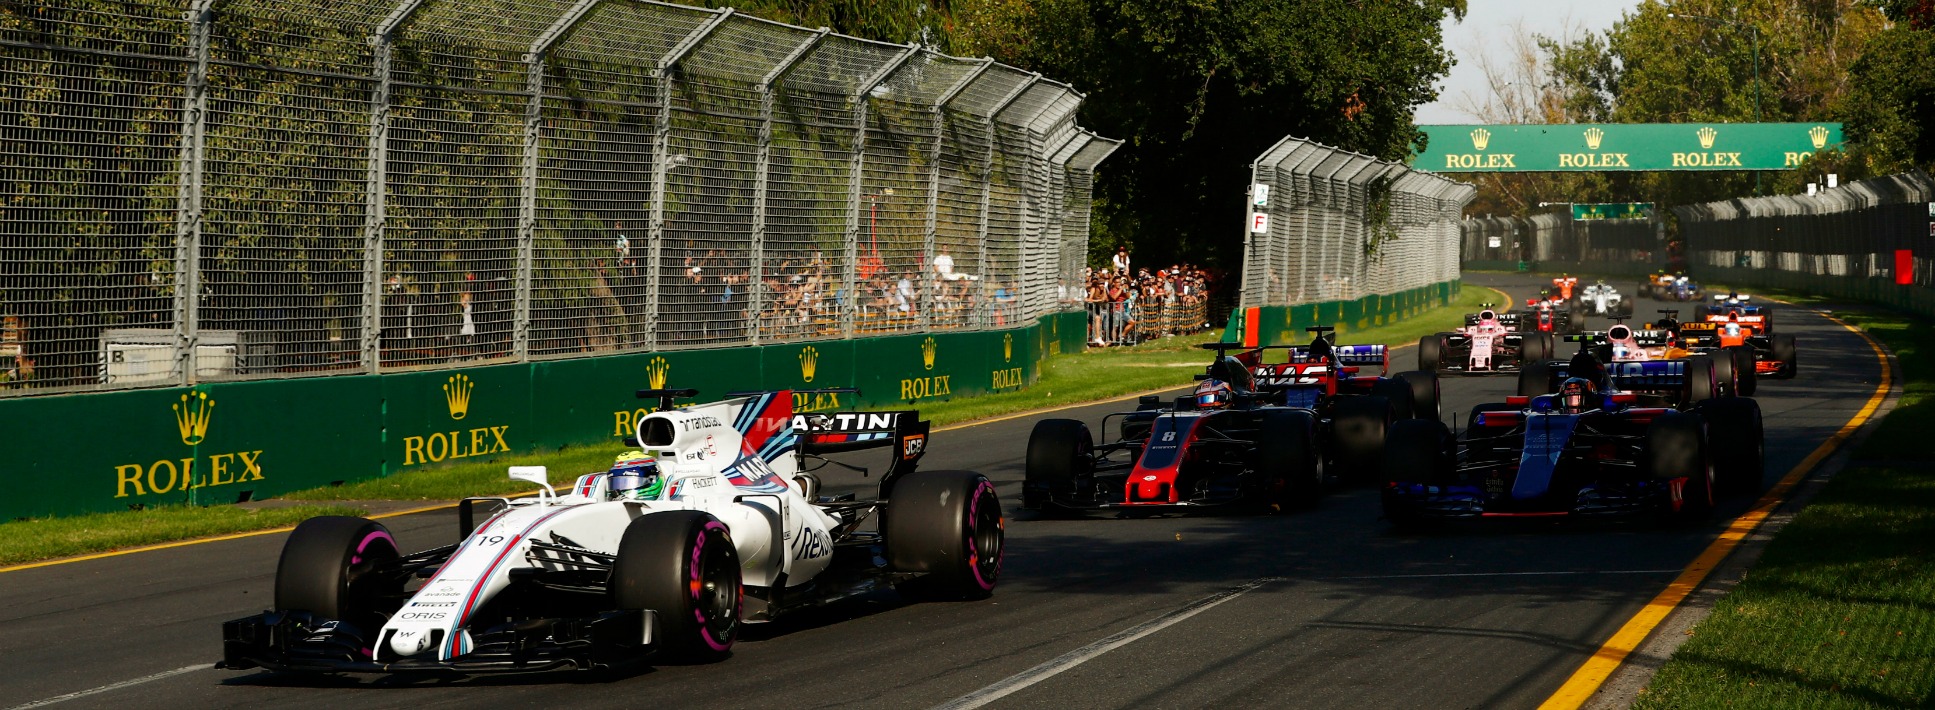 F1: Massa celebra sexta colocação, elogia Williams e brinca: ‘Nada mau para um velho’